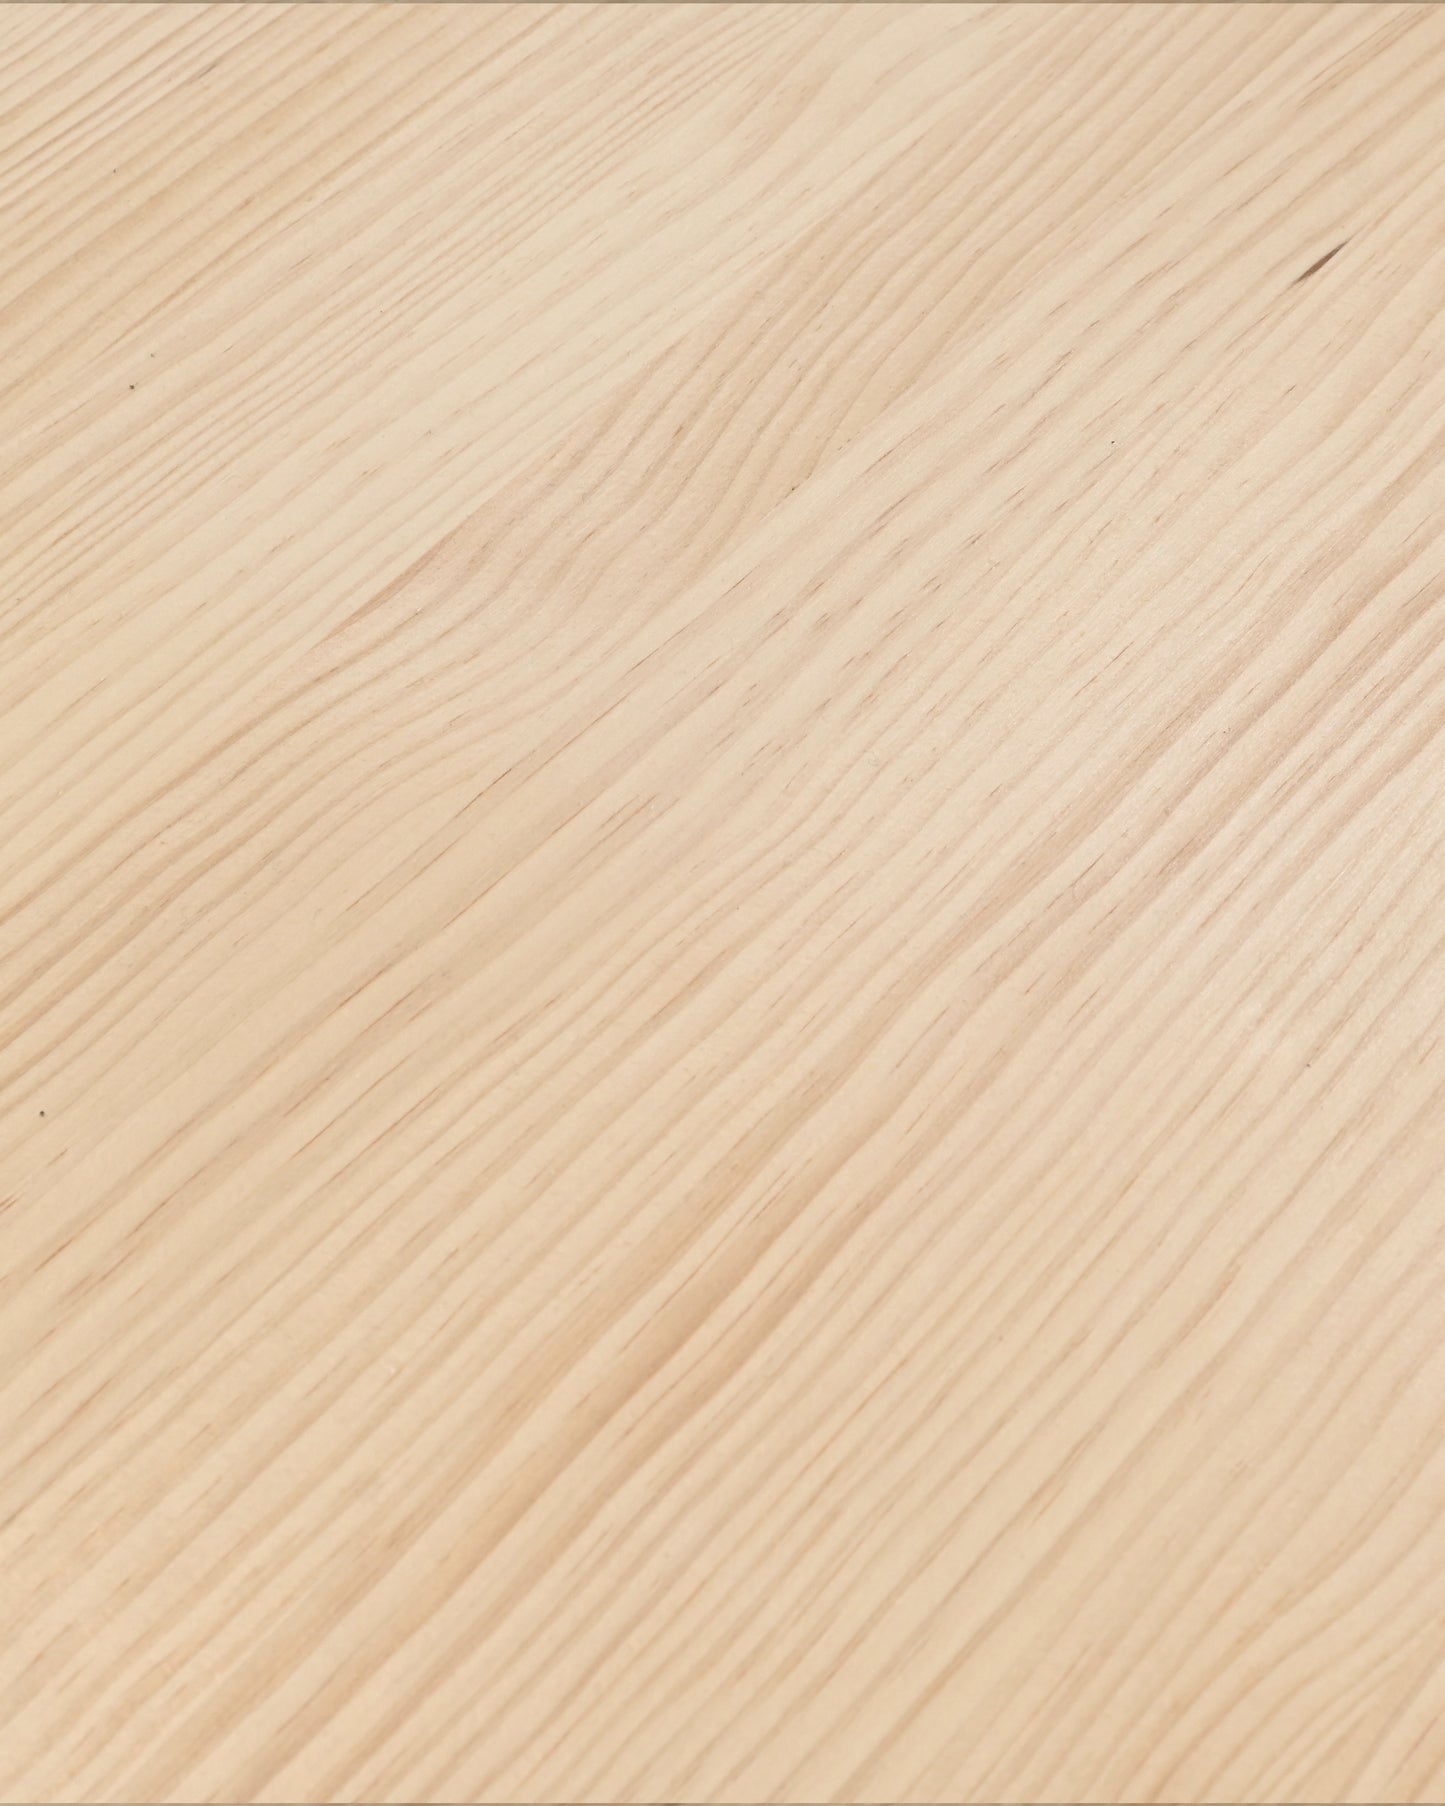 Mesa de comedor de madera maciza natural patas blancas 160x80cm - DECOWOOD